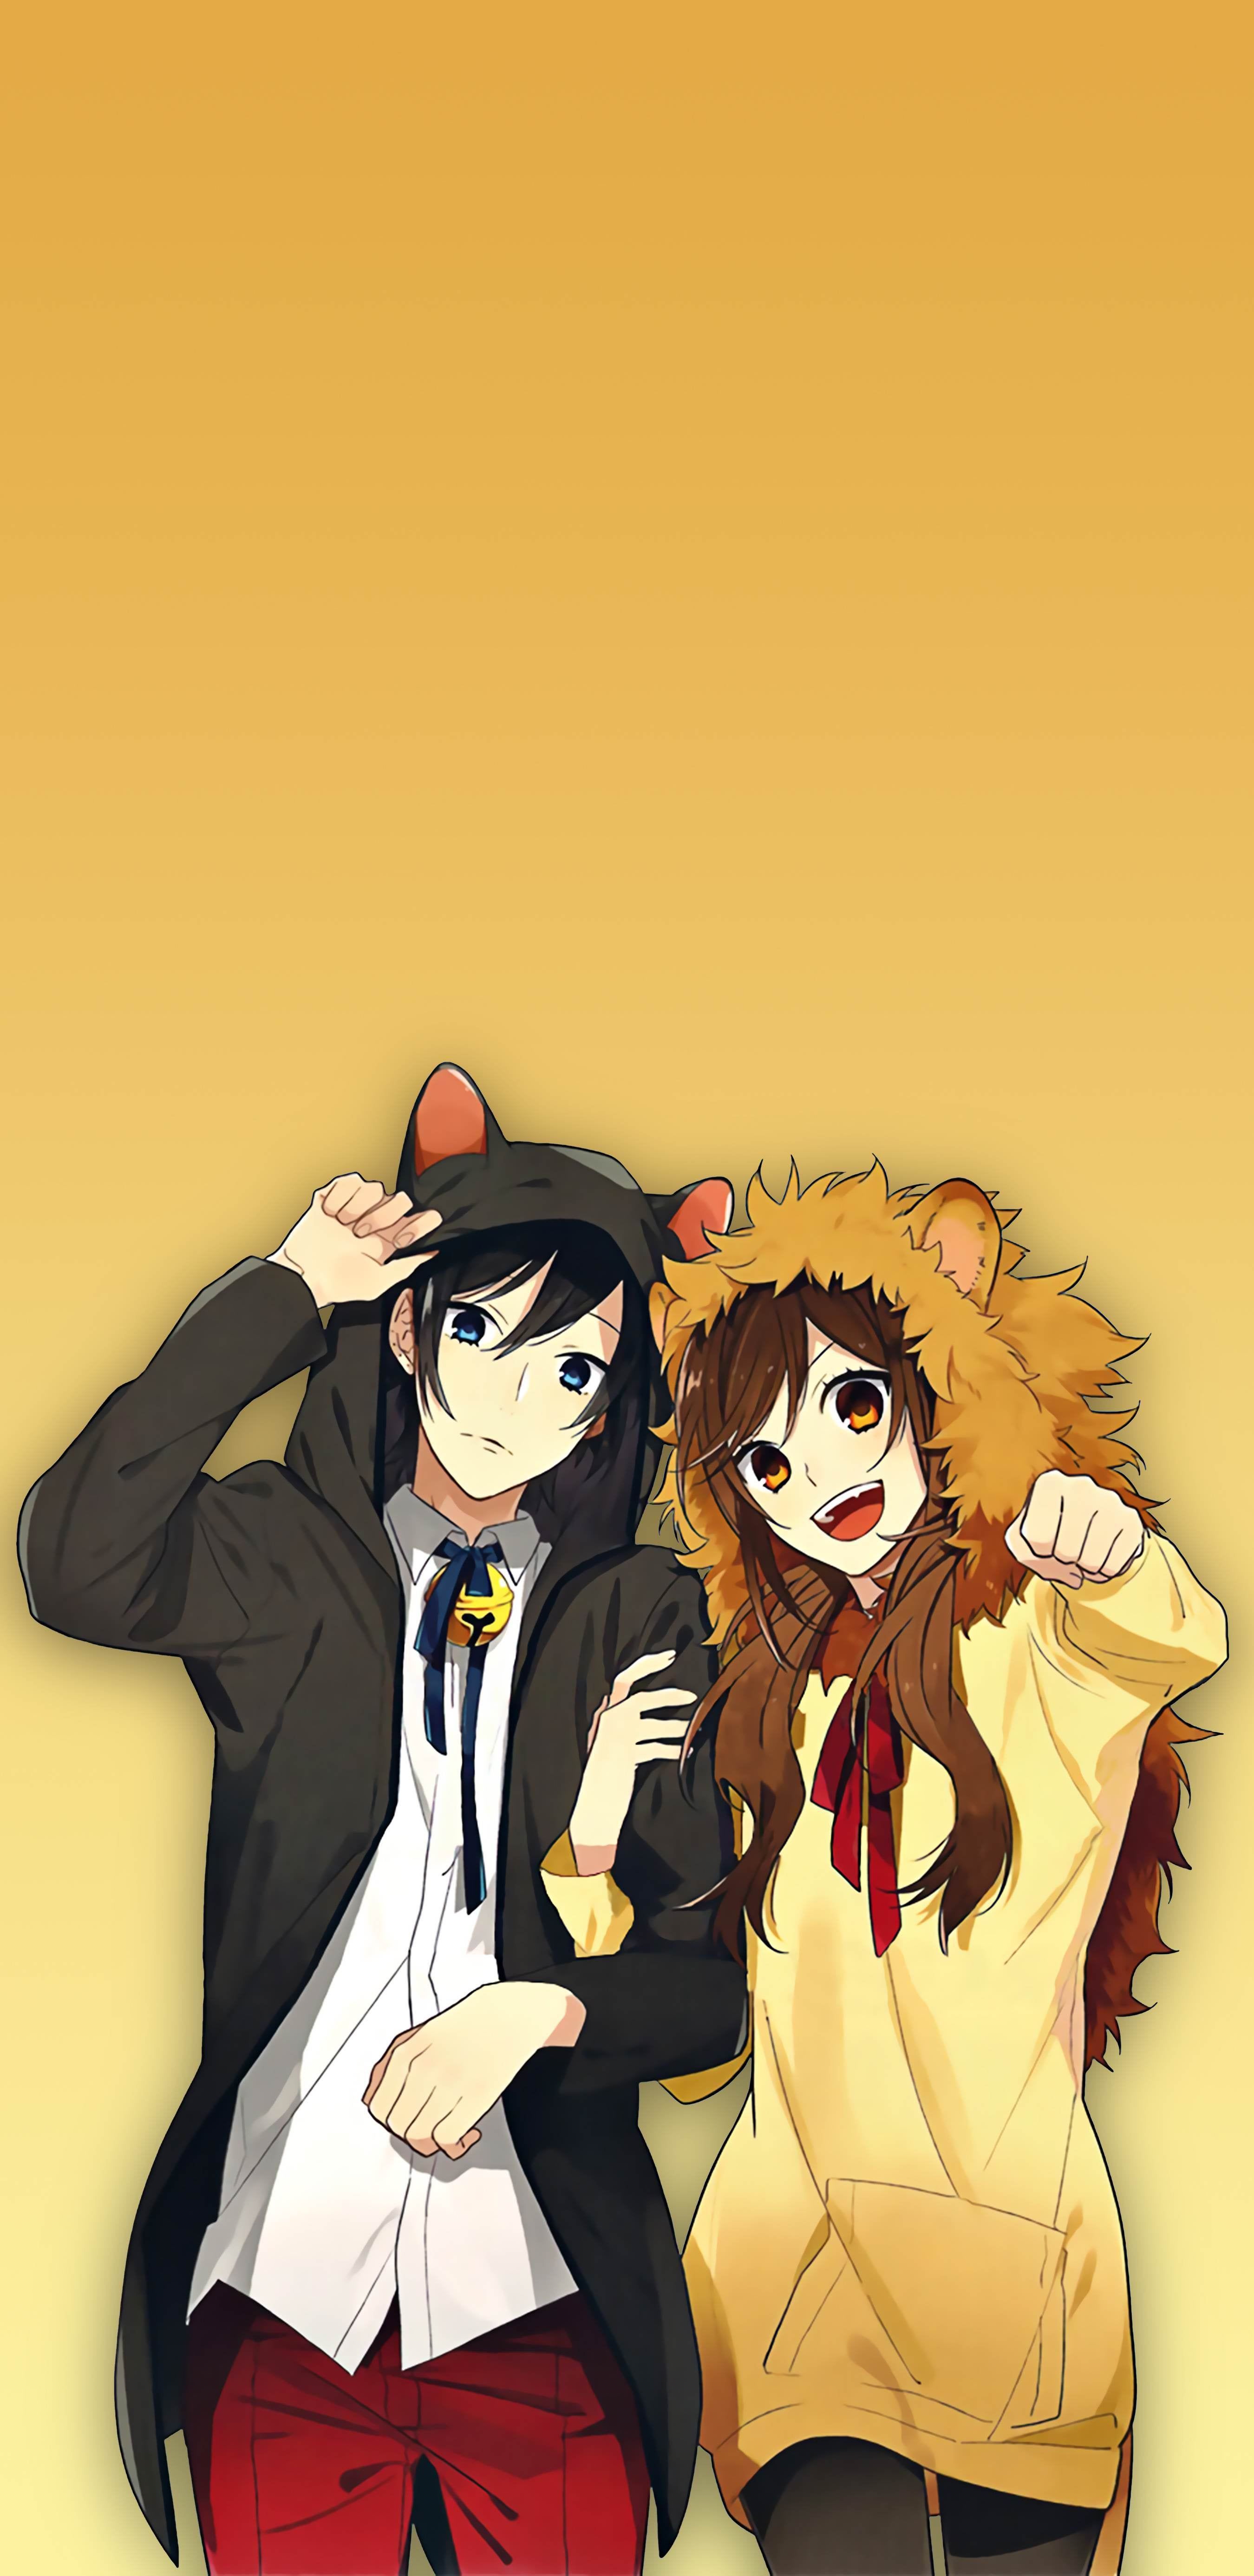 Horimiya Image by Rumoon #3332167 - Zerochan Anime Image Board